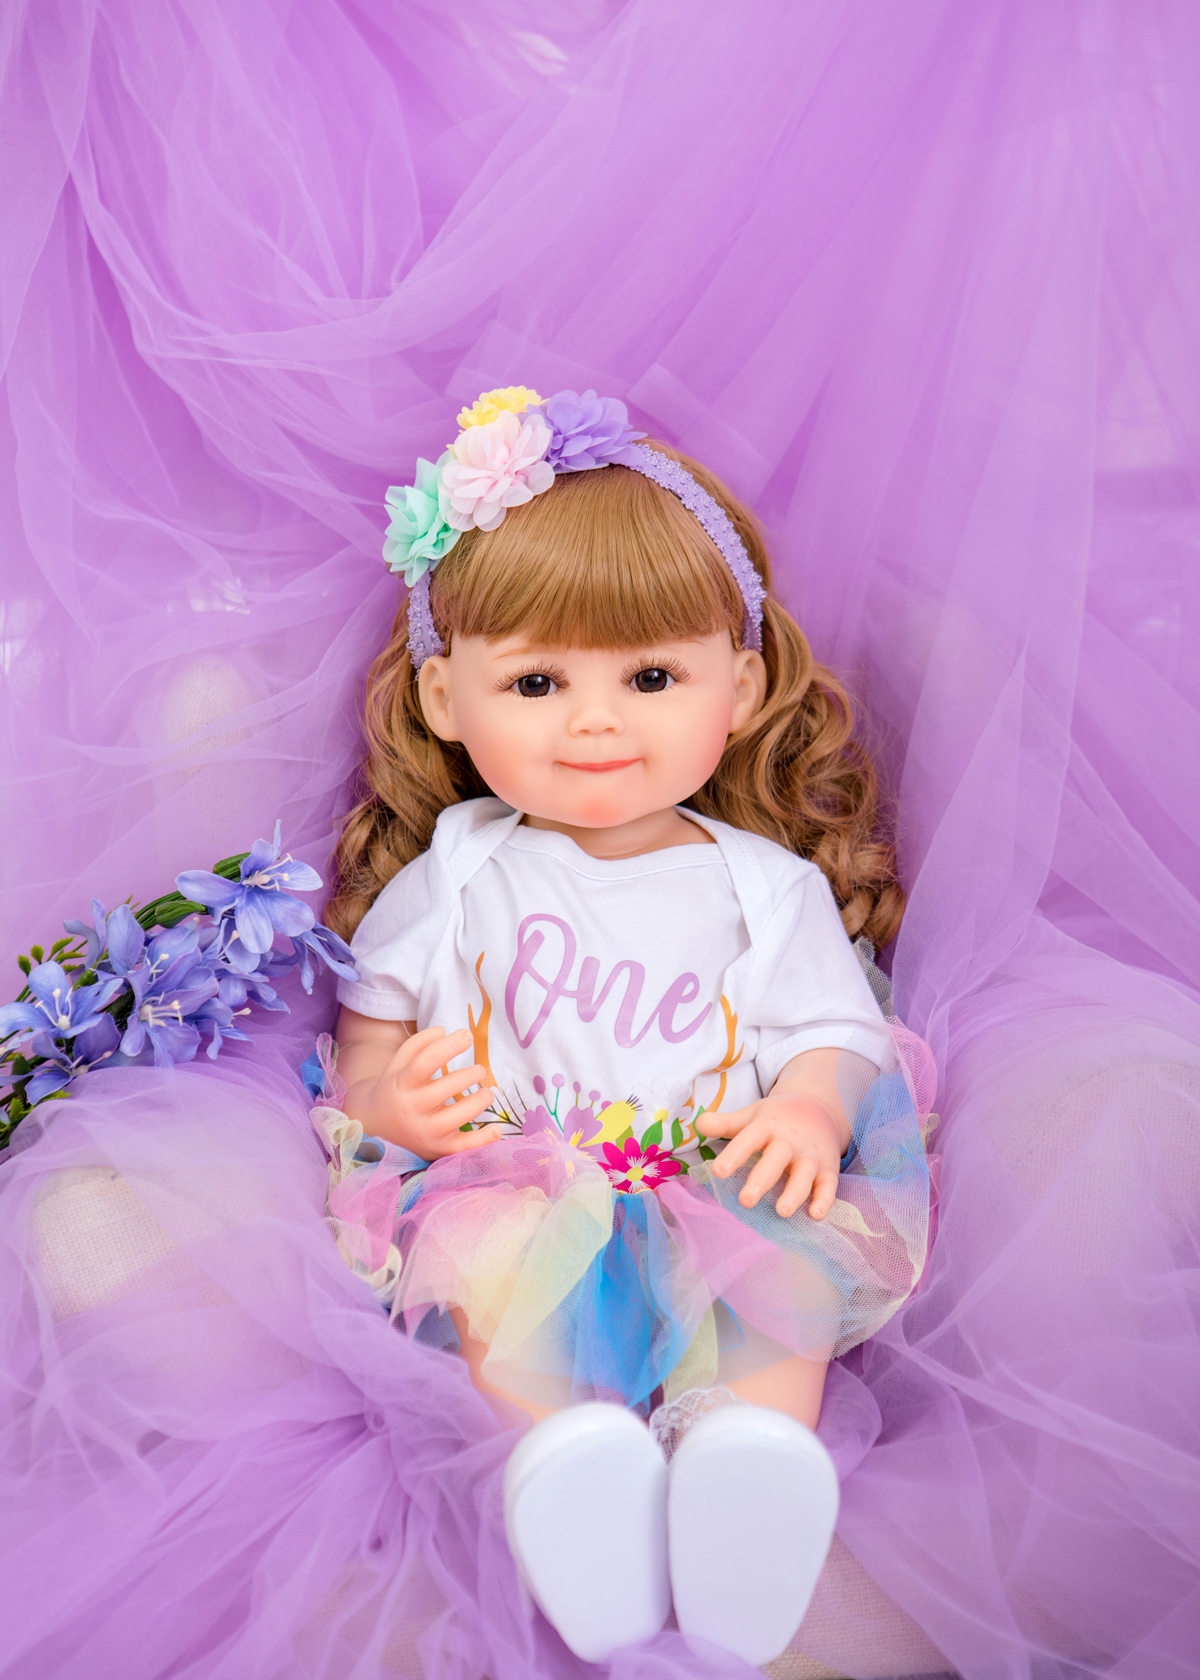 22 pollici super carina bambola UU tutta la bambola rinata in silicone bambini e bambini regali di compleanno la giornata bambini